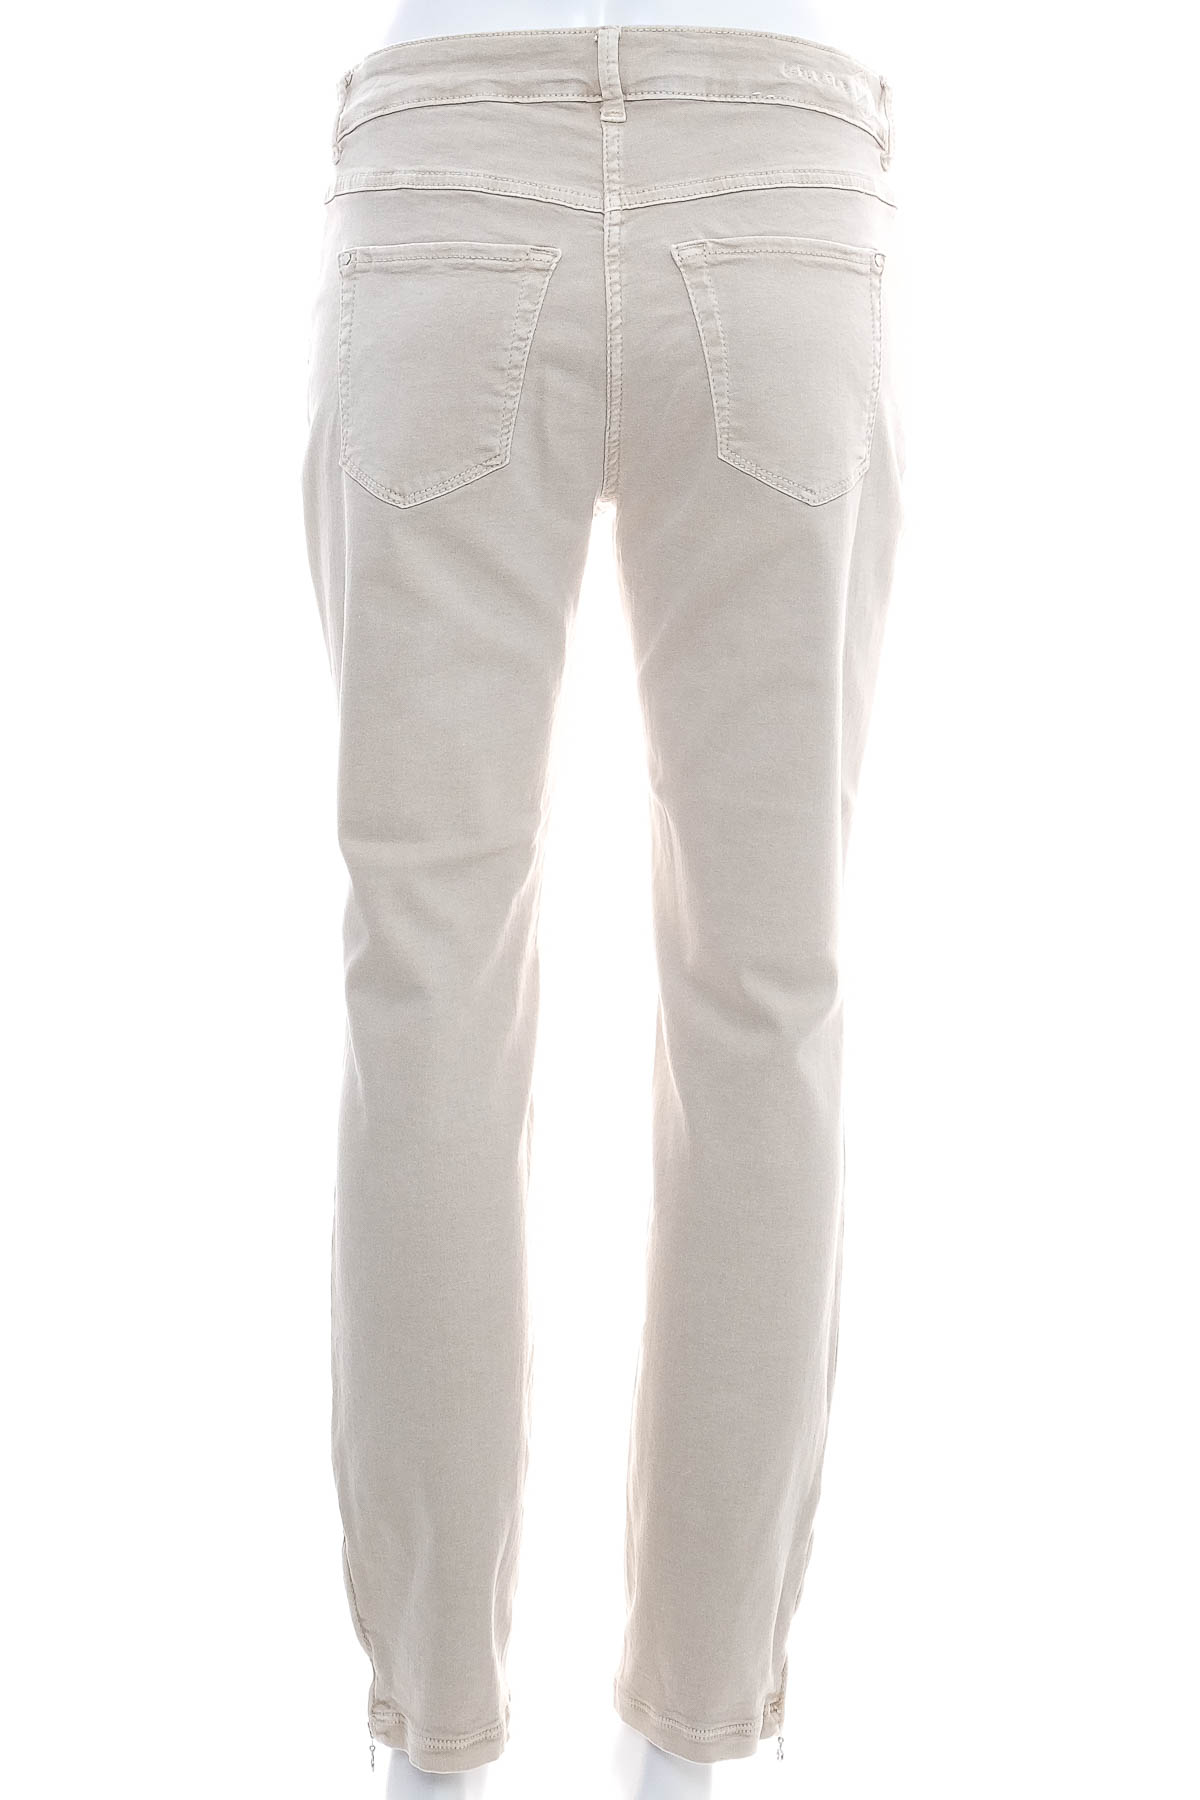 Women's trousers - Dream Jeans by MAC - 1